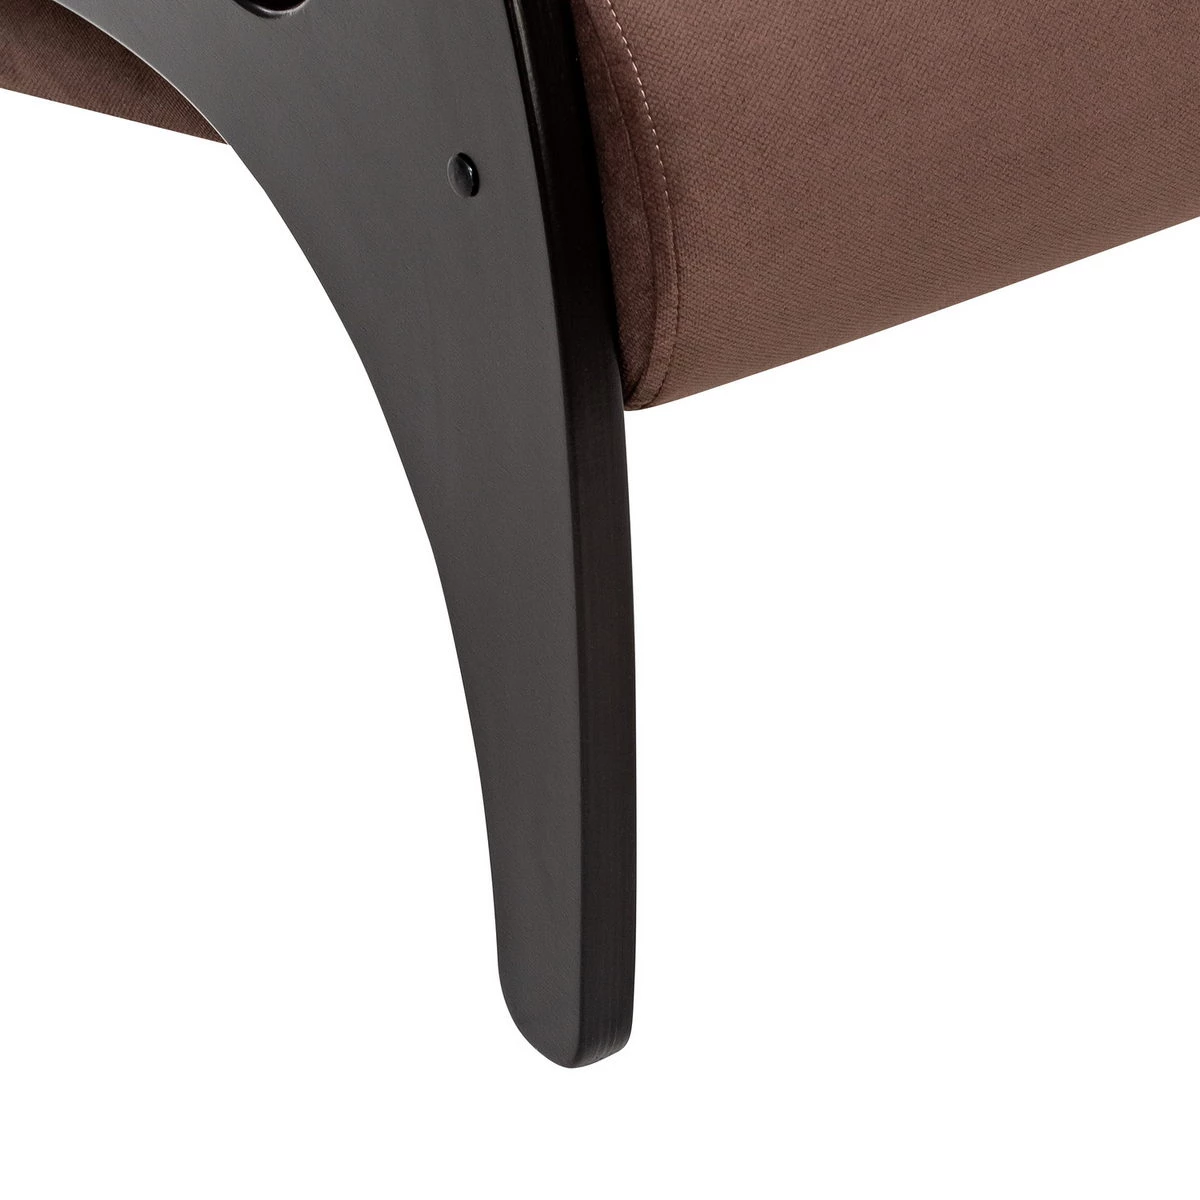 Кресло для отдыха Модель 41 (Импэкс). Цвет каркаса: Венге; Цвет обивки: Maxx 235